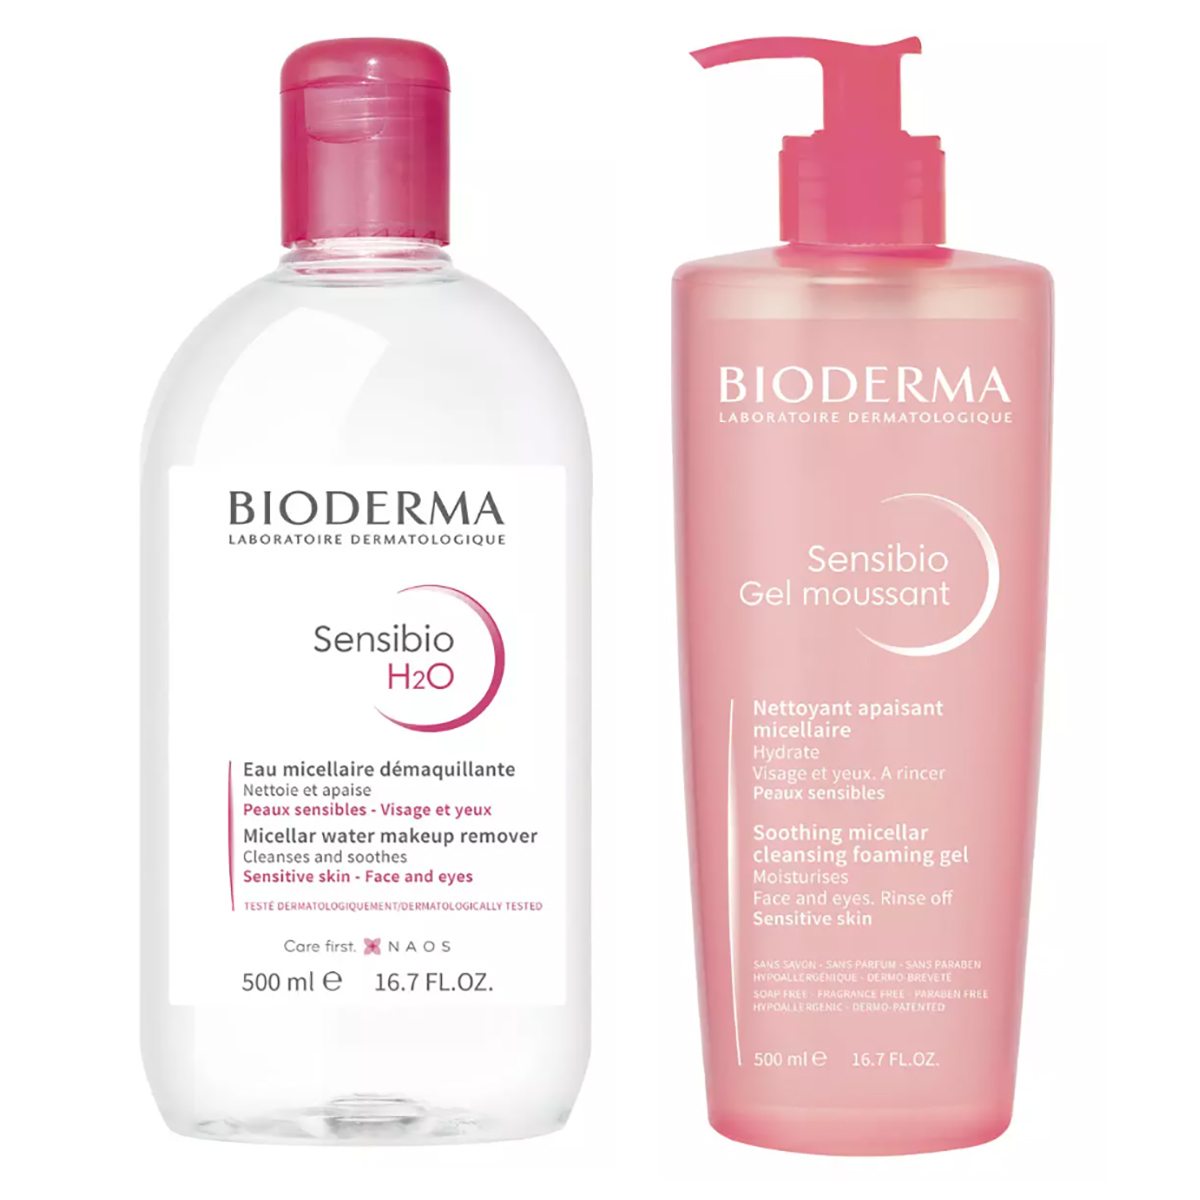 bioderma набор для ежедневного очищения кожи лосьон 250 мл мицеллярная вода 500 мл bioderma sensibio Bioderma Набор Очищение чувствительной кожи, 2 средства (Bioderma, Sensibio)